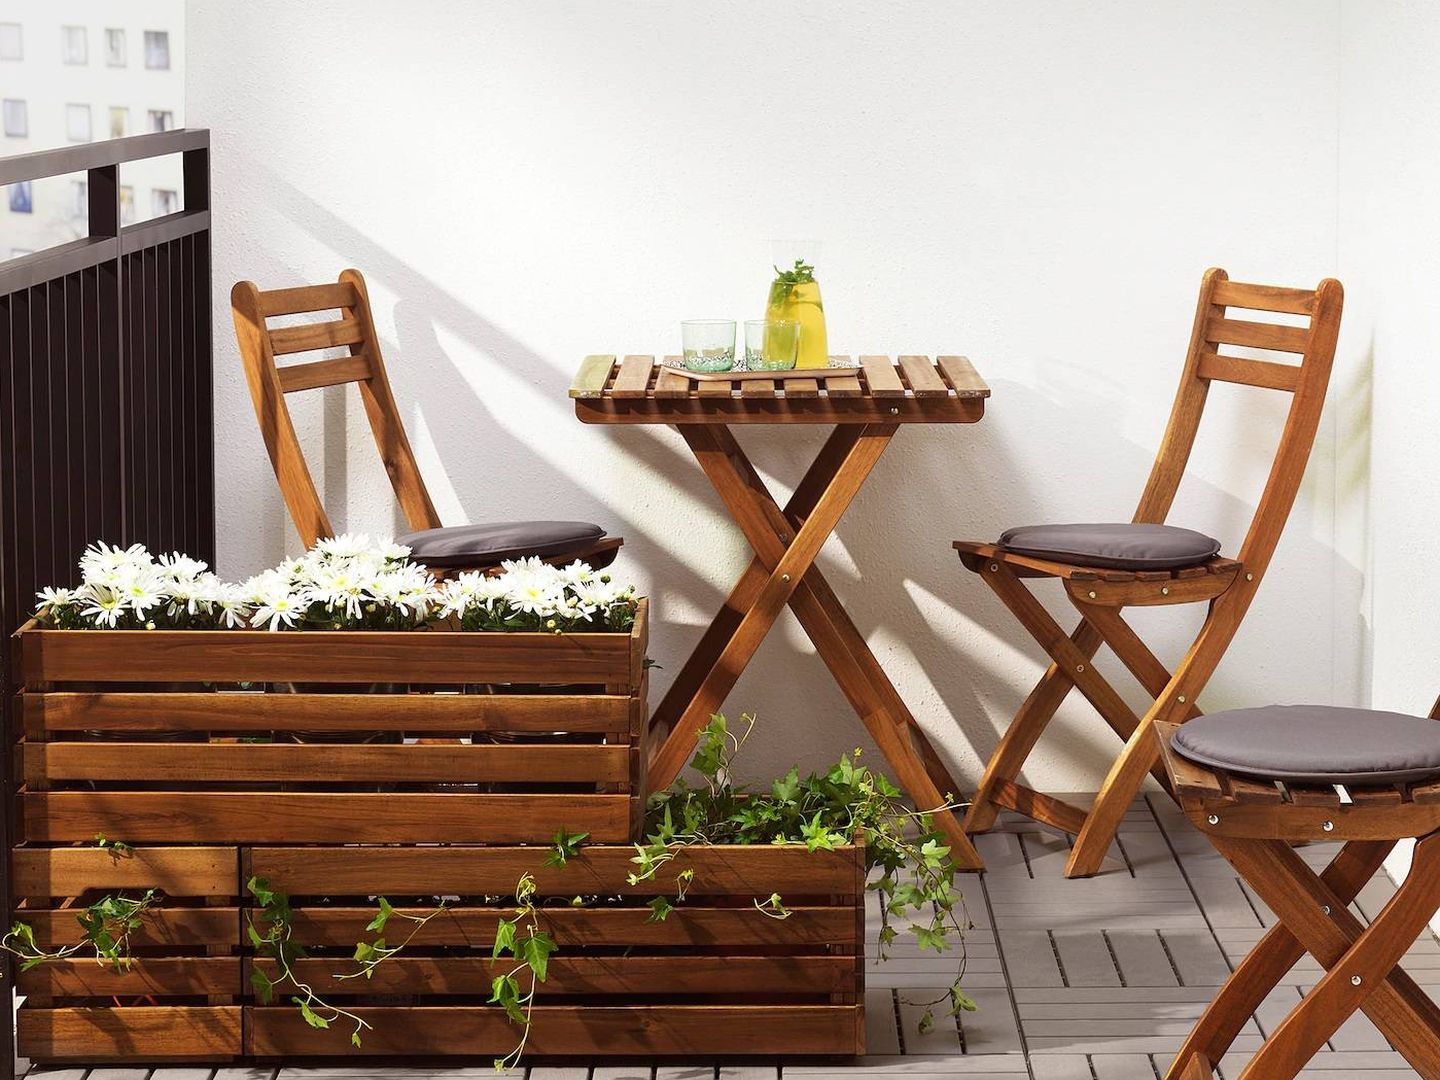 Maceteros de Ikea para decorar tu terraza. (Cortesía)